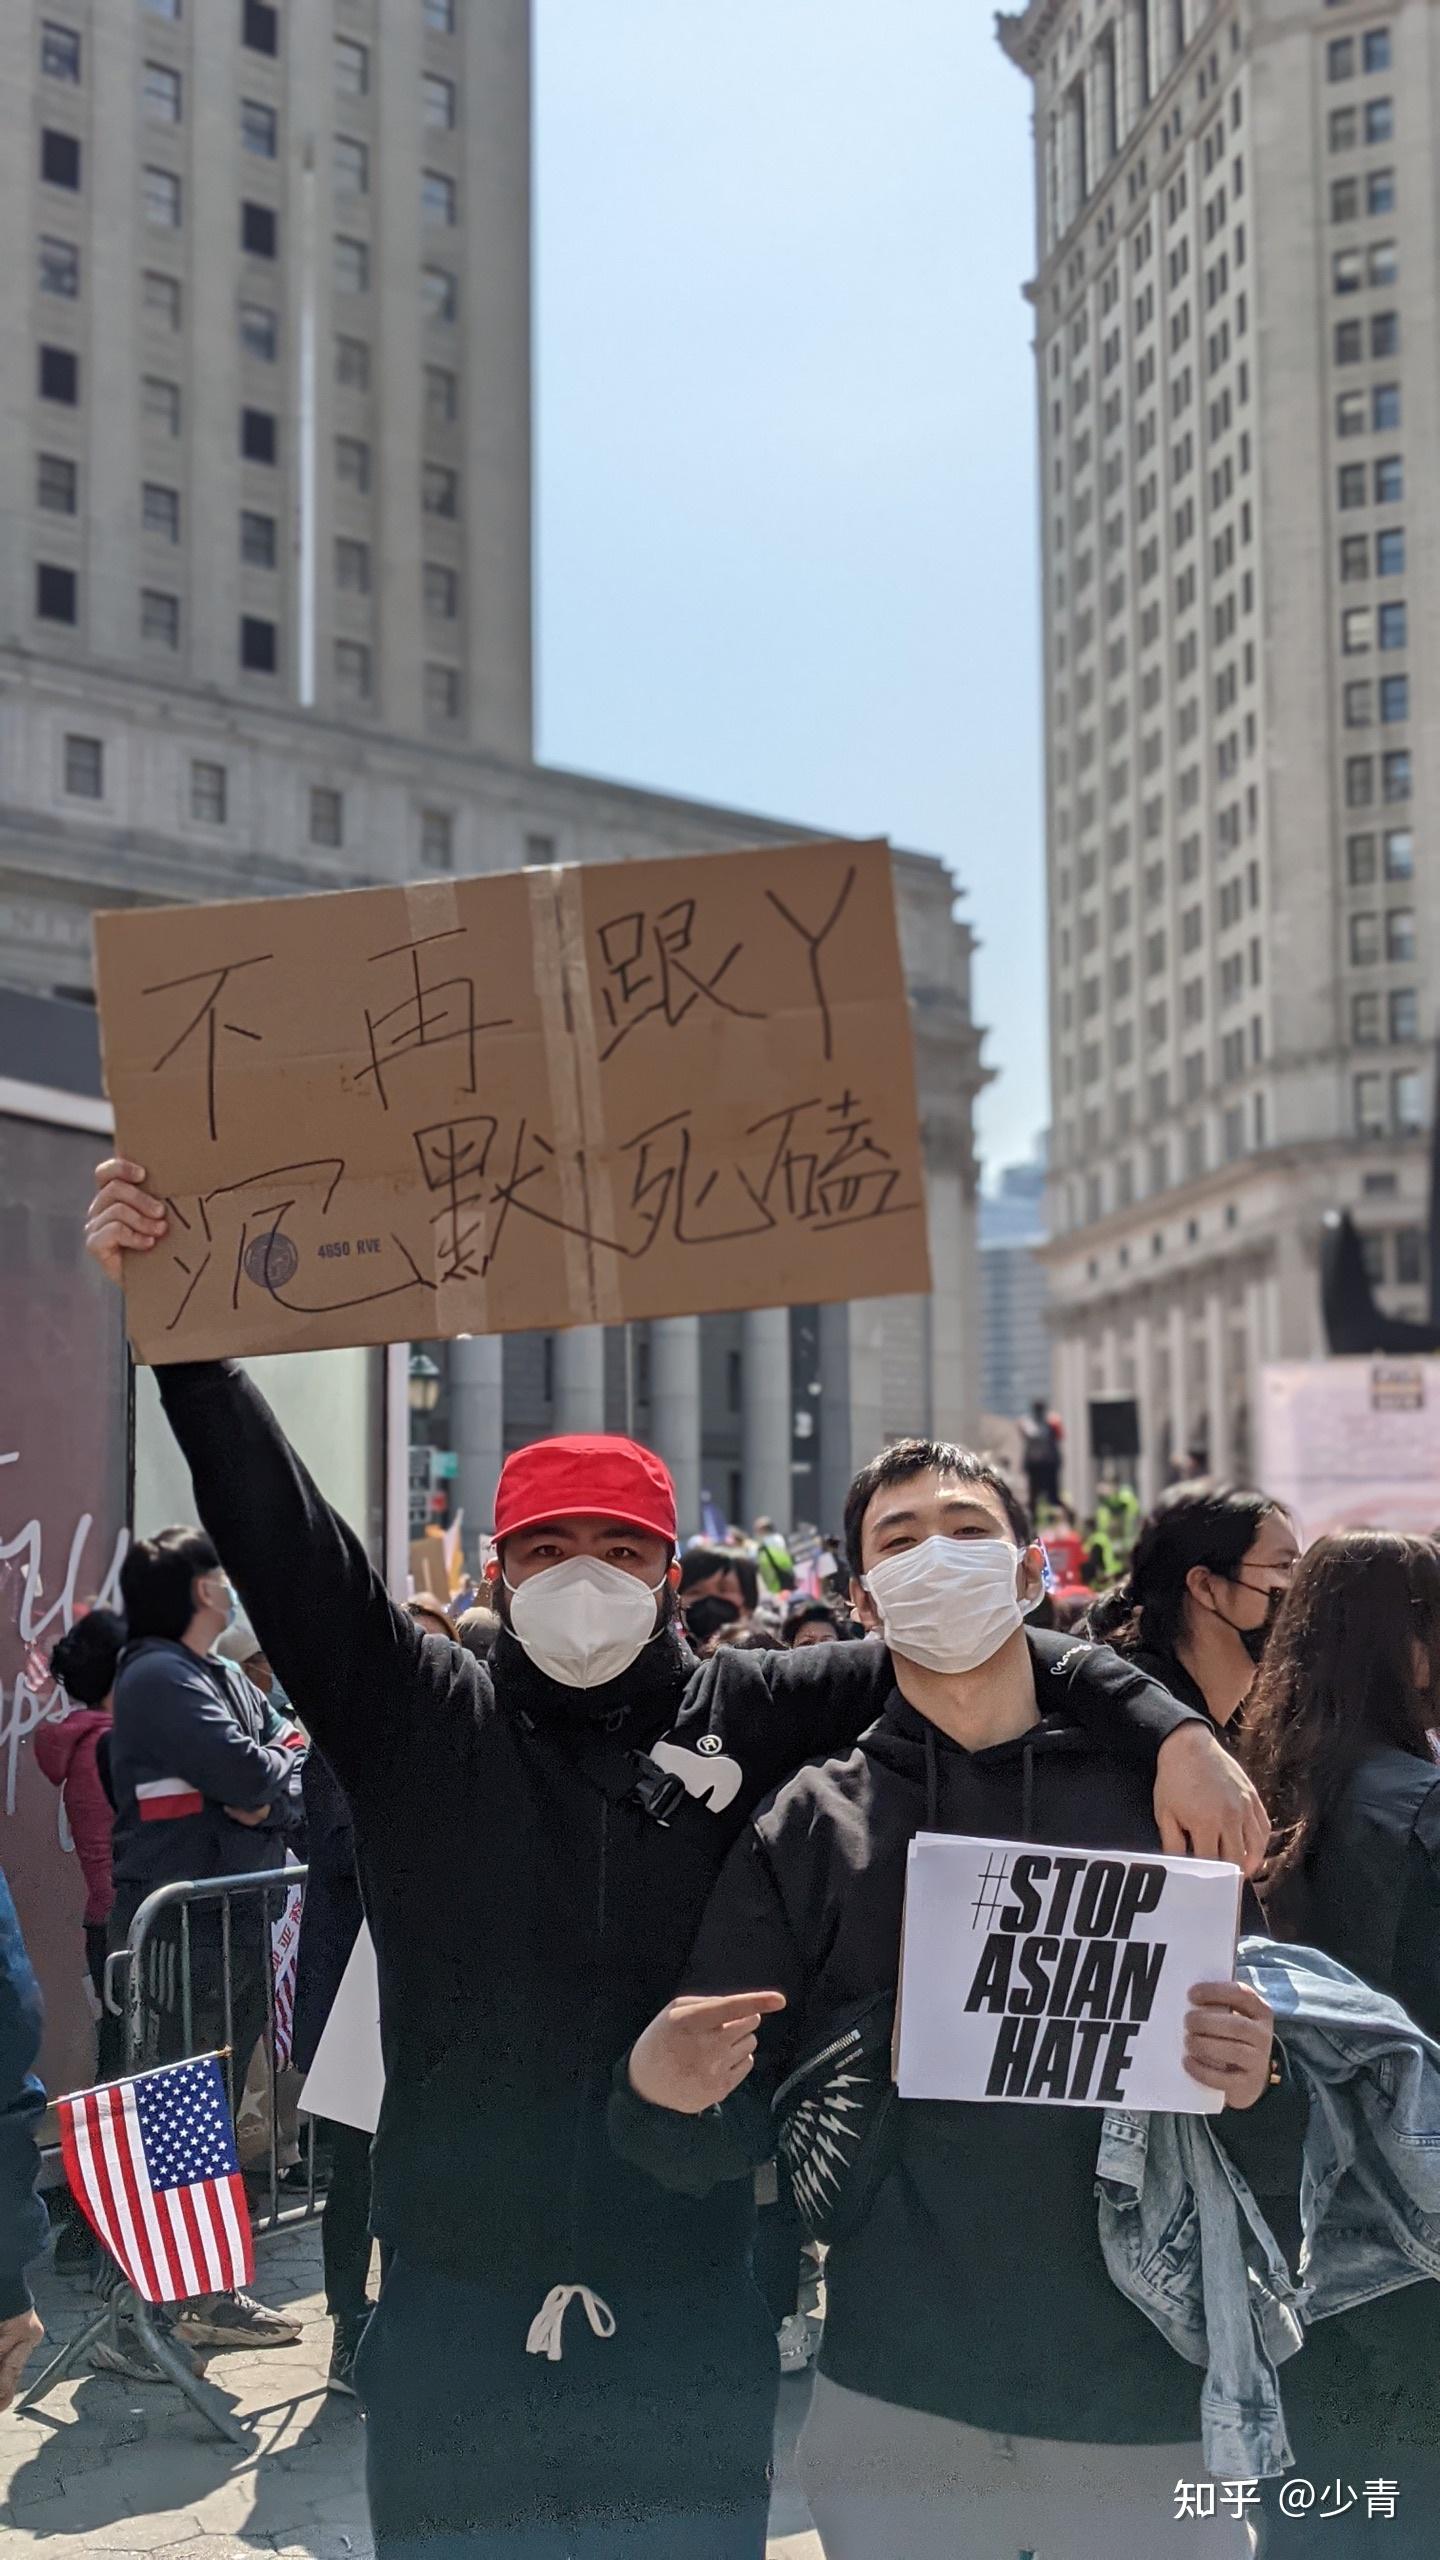 如何看待美国爆发的反对歧视亚裔游行活动? 